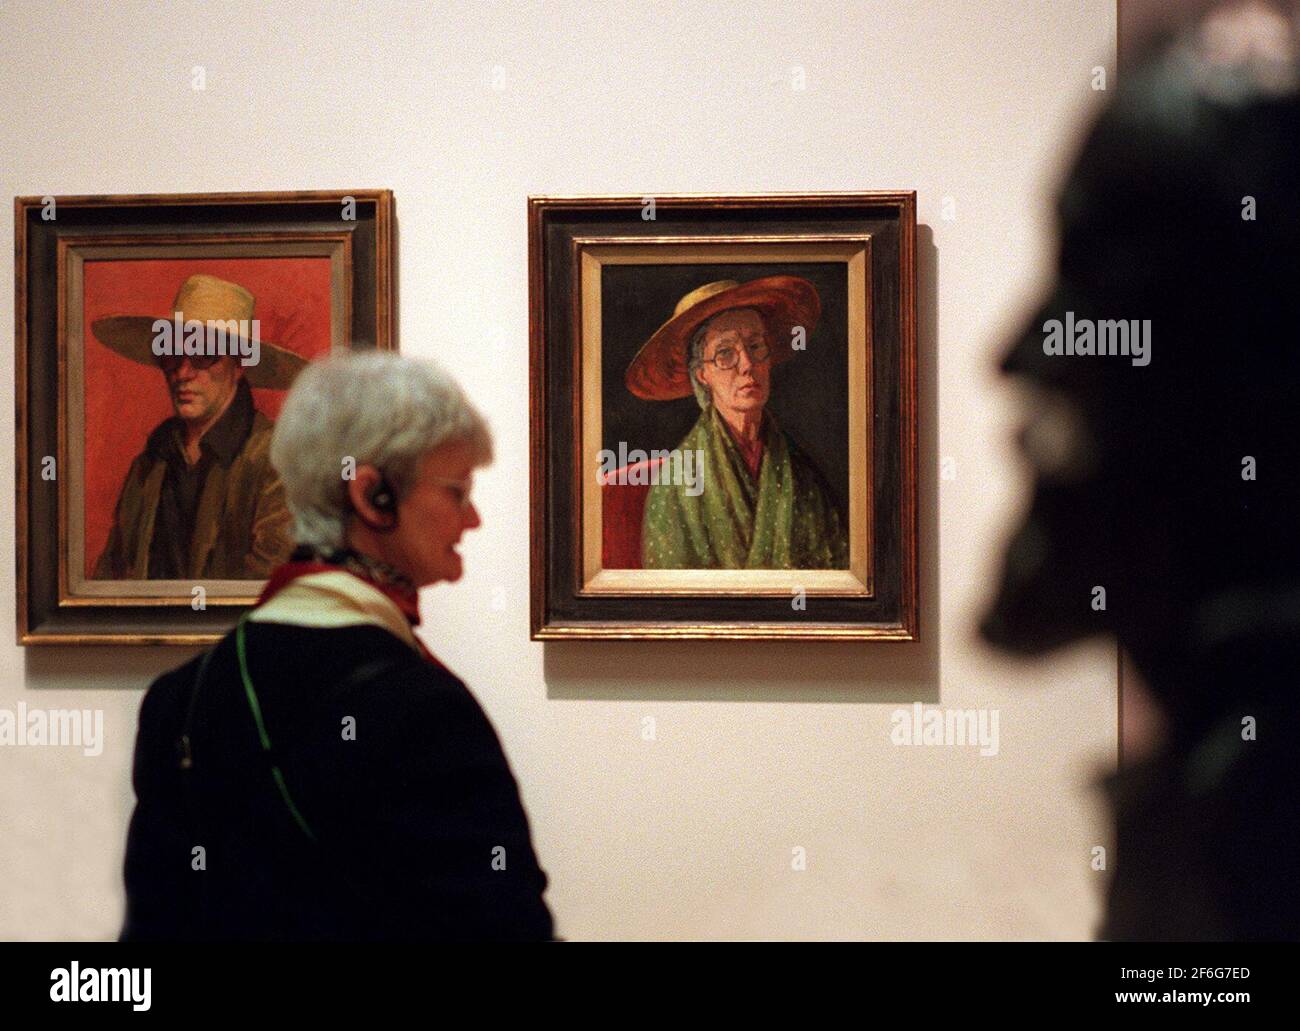 Apertura della mostra Arte di Bloomsbury a The Tate.Pic mostra un visitatore che guarda L-R: Un autoritratto di Duncan Grant, e un autoritratto di Vanessa Bell. La scultura in primo piano è Stephen Tomlin di Lytton Strachey. Foto Stock